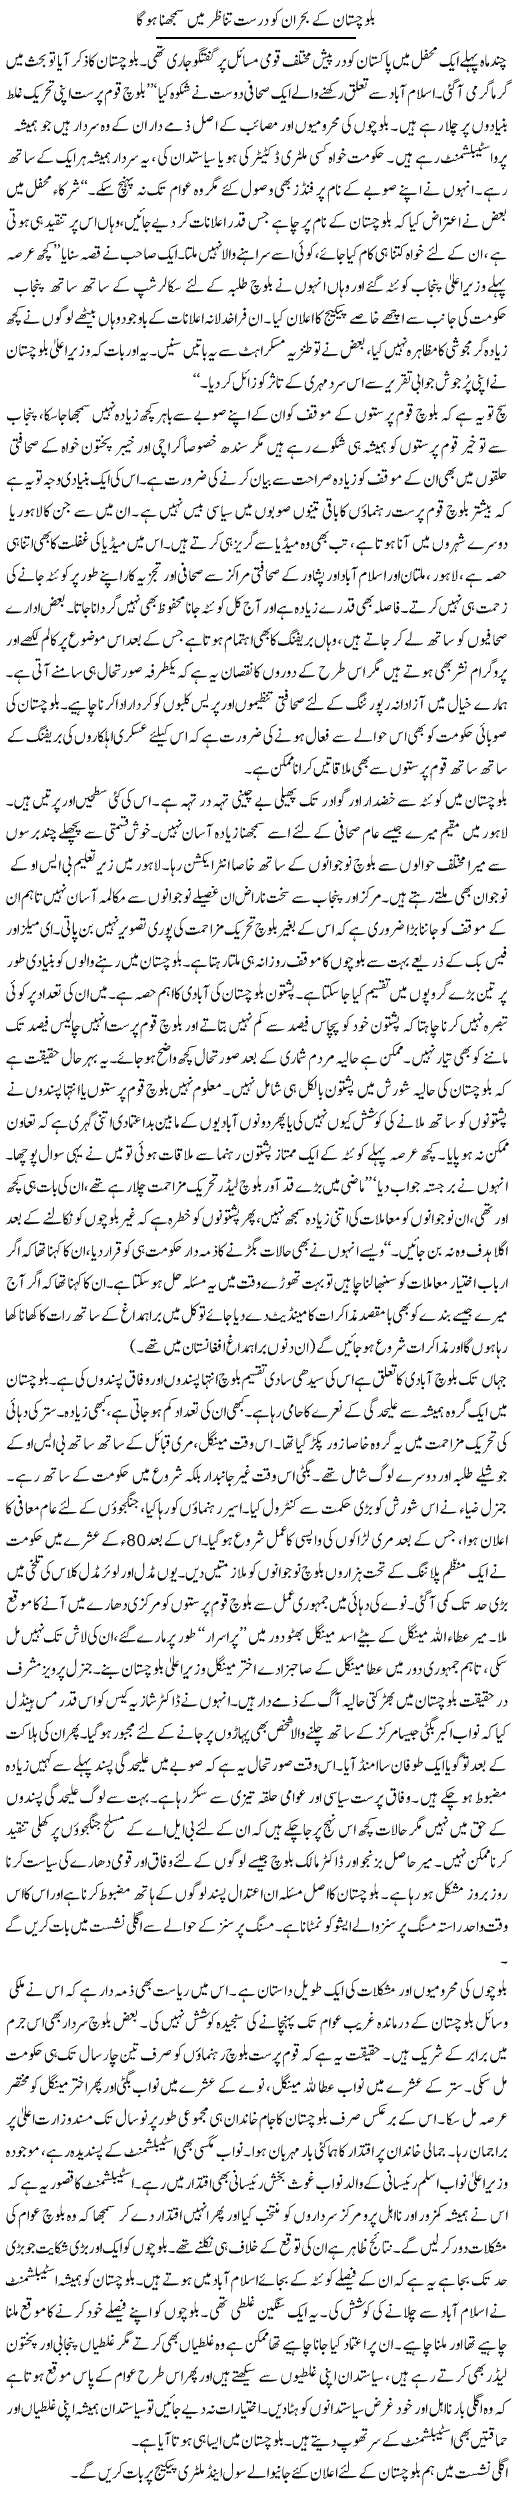 Balochistan Issue Express Column Aamir Khakwani 21 April 2011